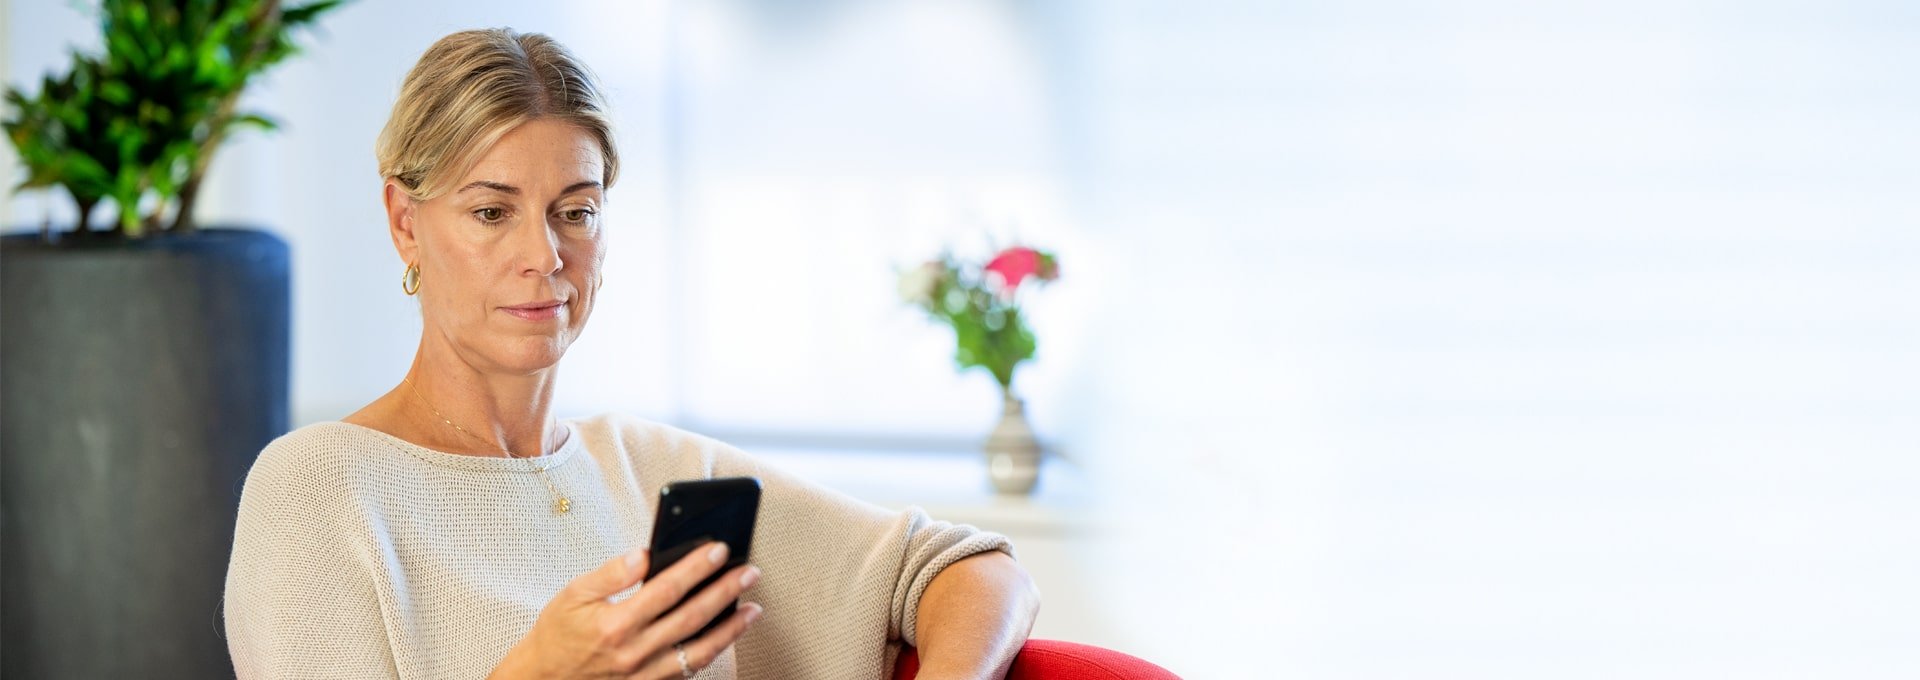 Femme souriante et détendue regardant son smartphone.